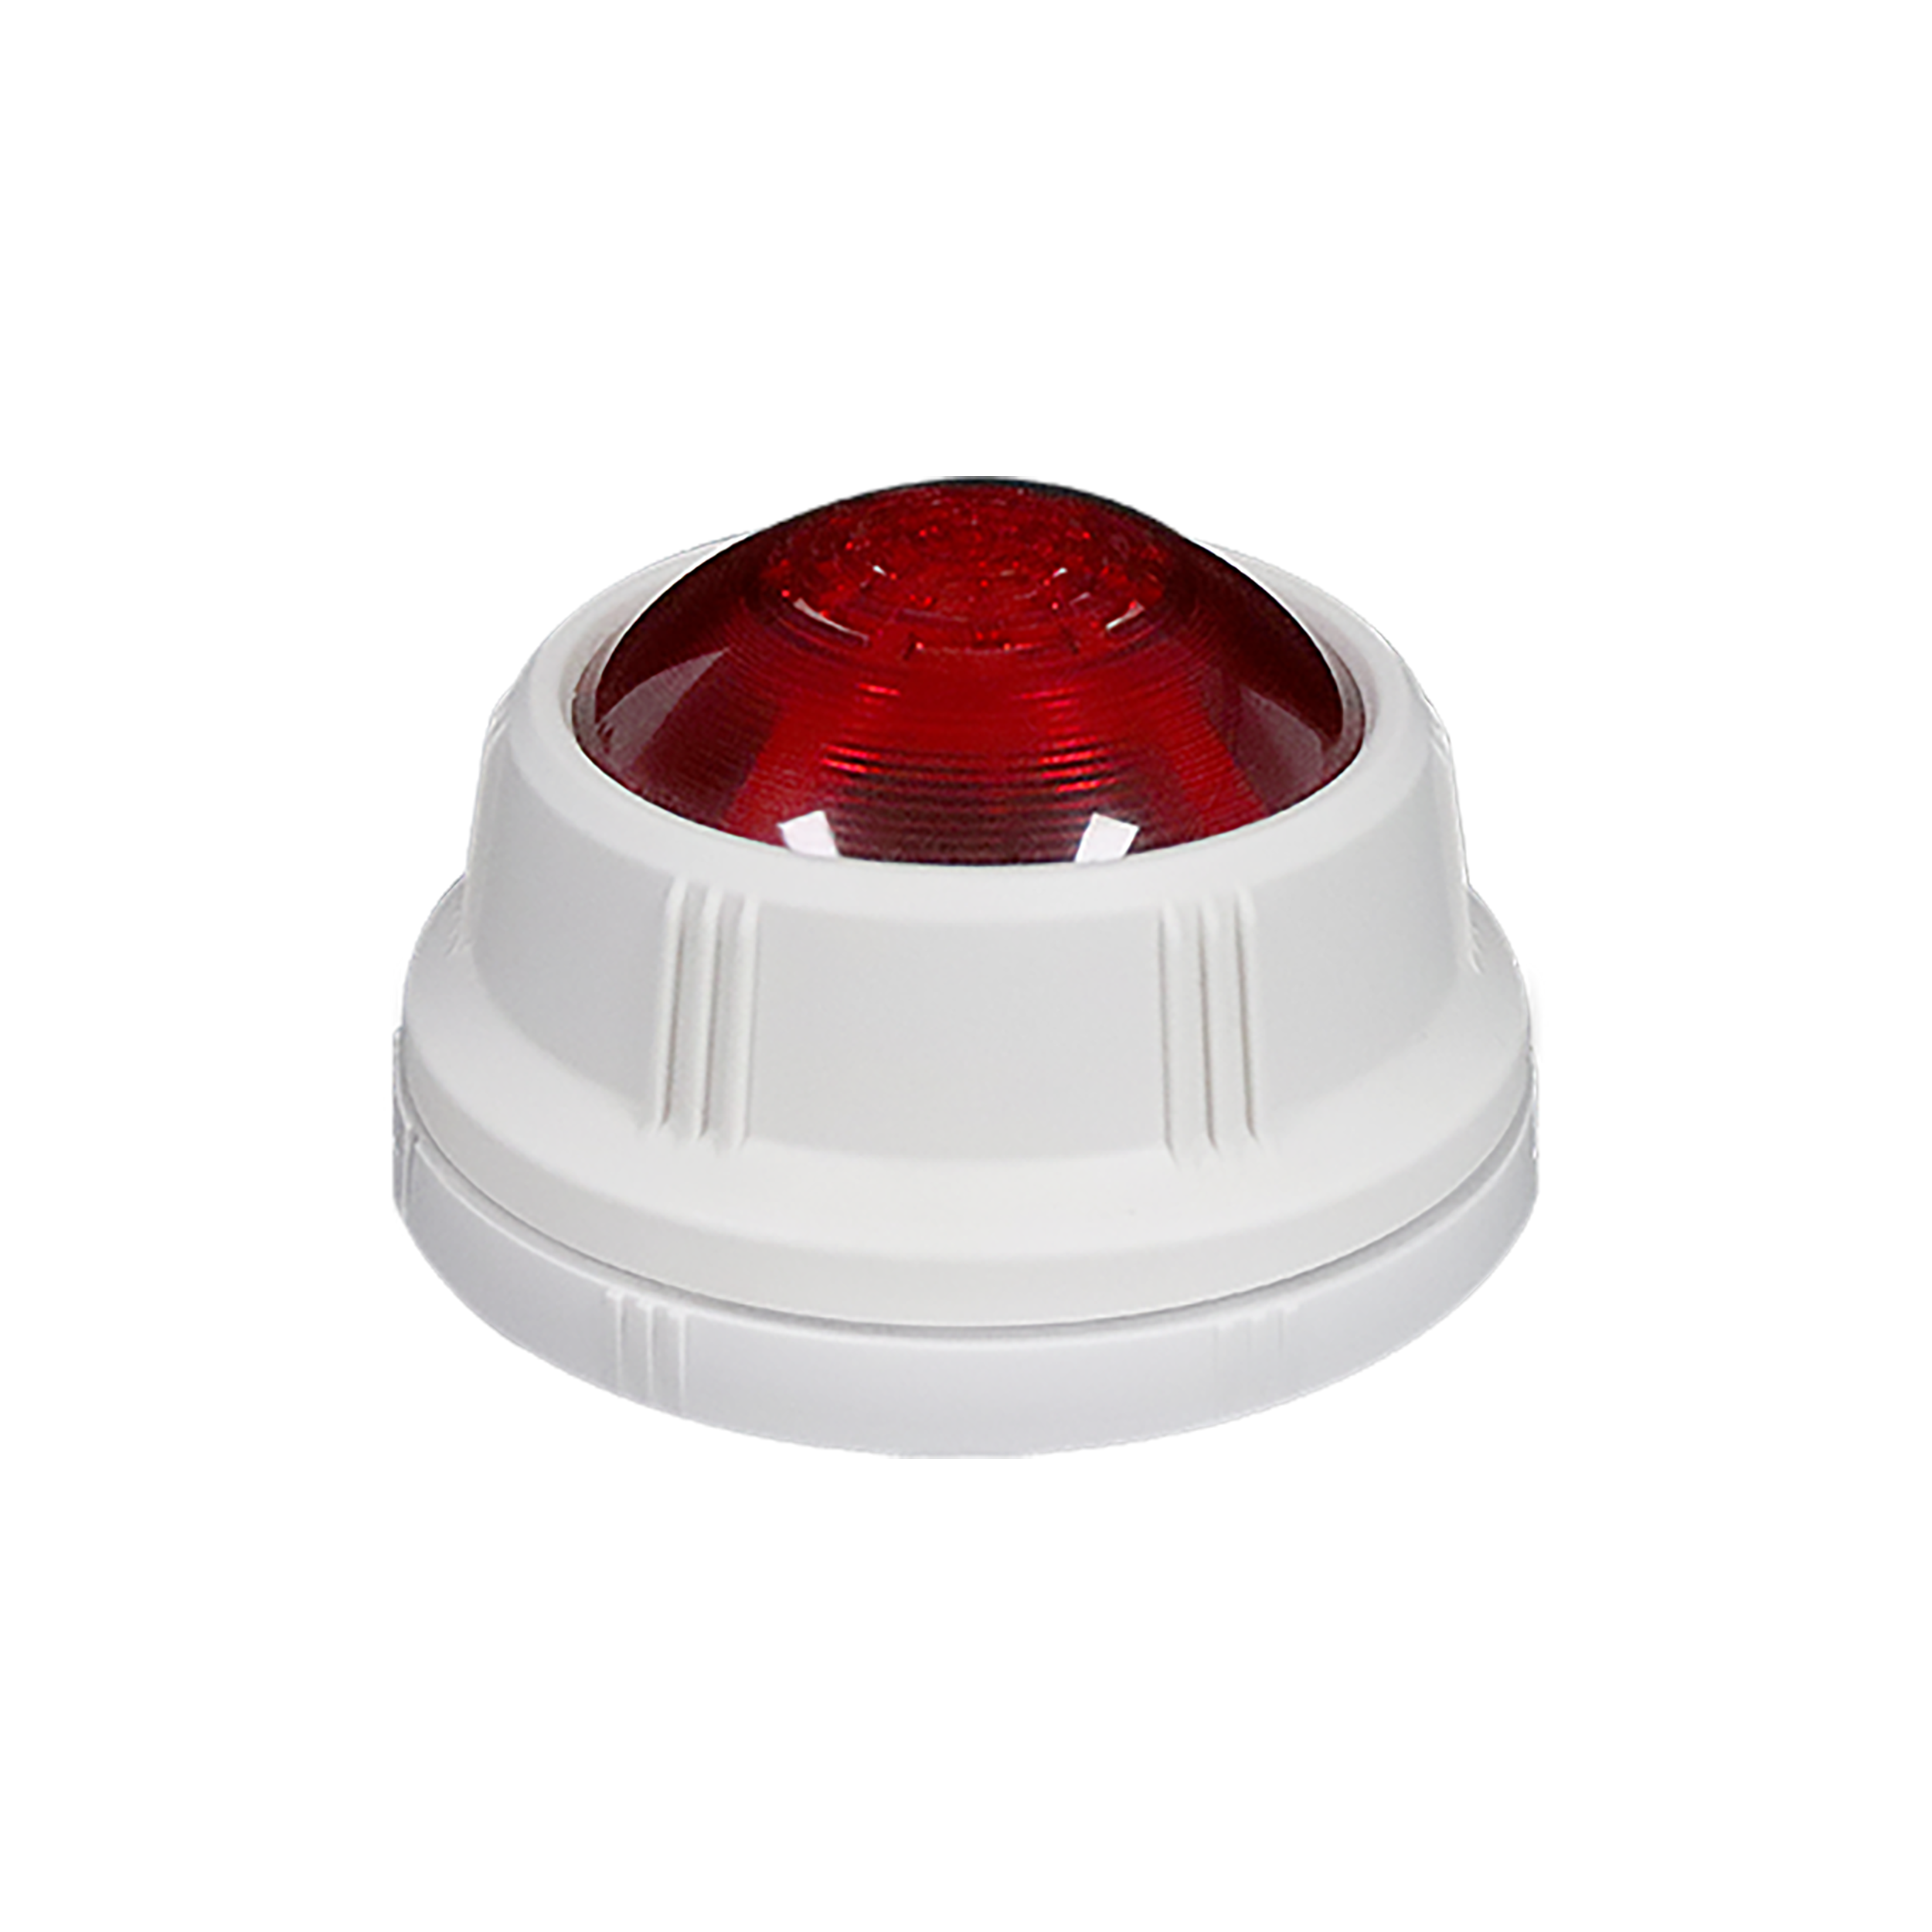 JBF1373 Alarma de luz y sonido de incendio eficaz |Mejorar la seguridad y la concienciación